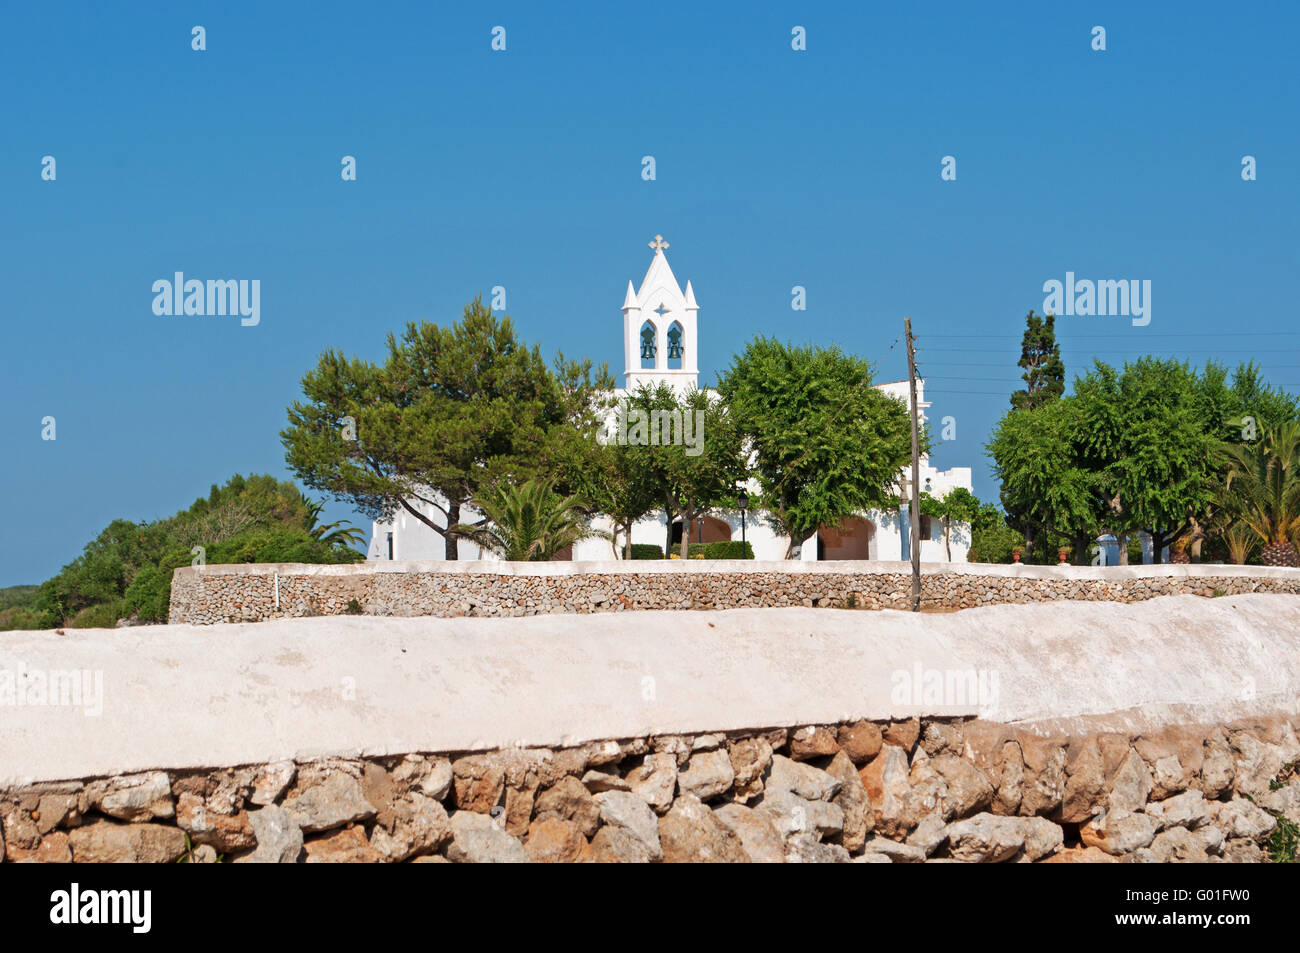 Minorca isole Baleari, Spagna, Europa: un muro di pietra e una chiesa bianca nella campagna menorcan Foto Stock